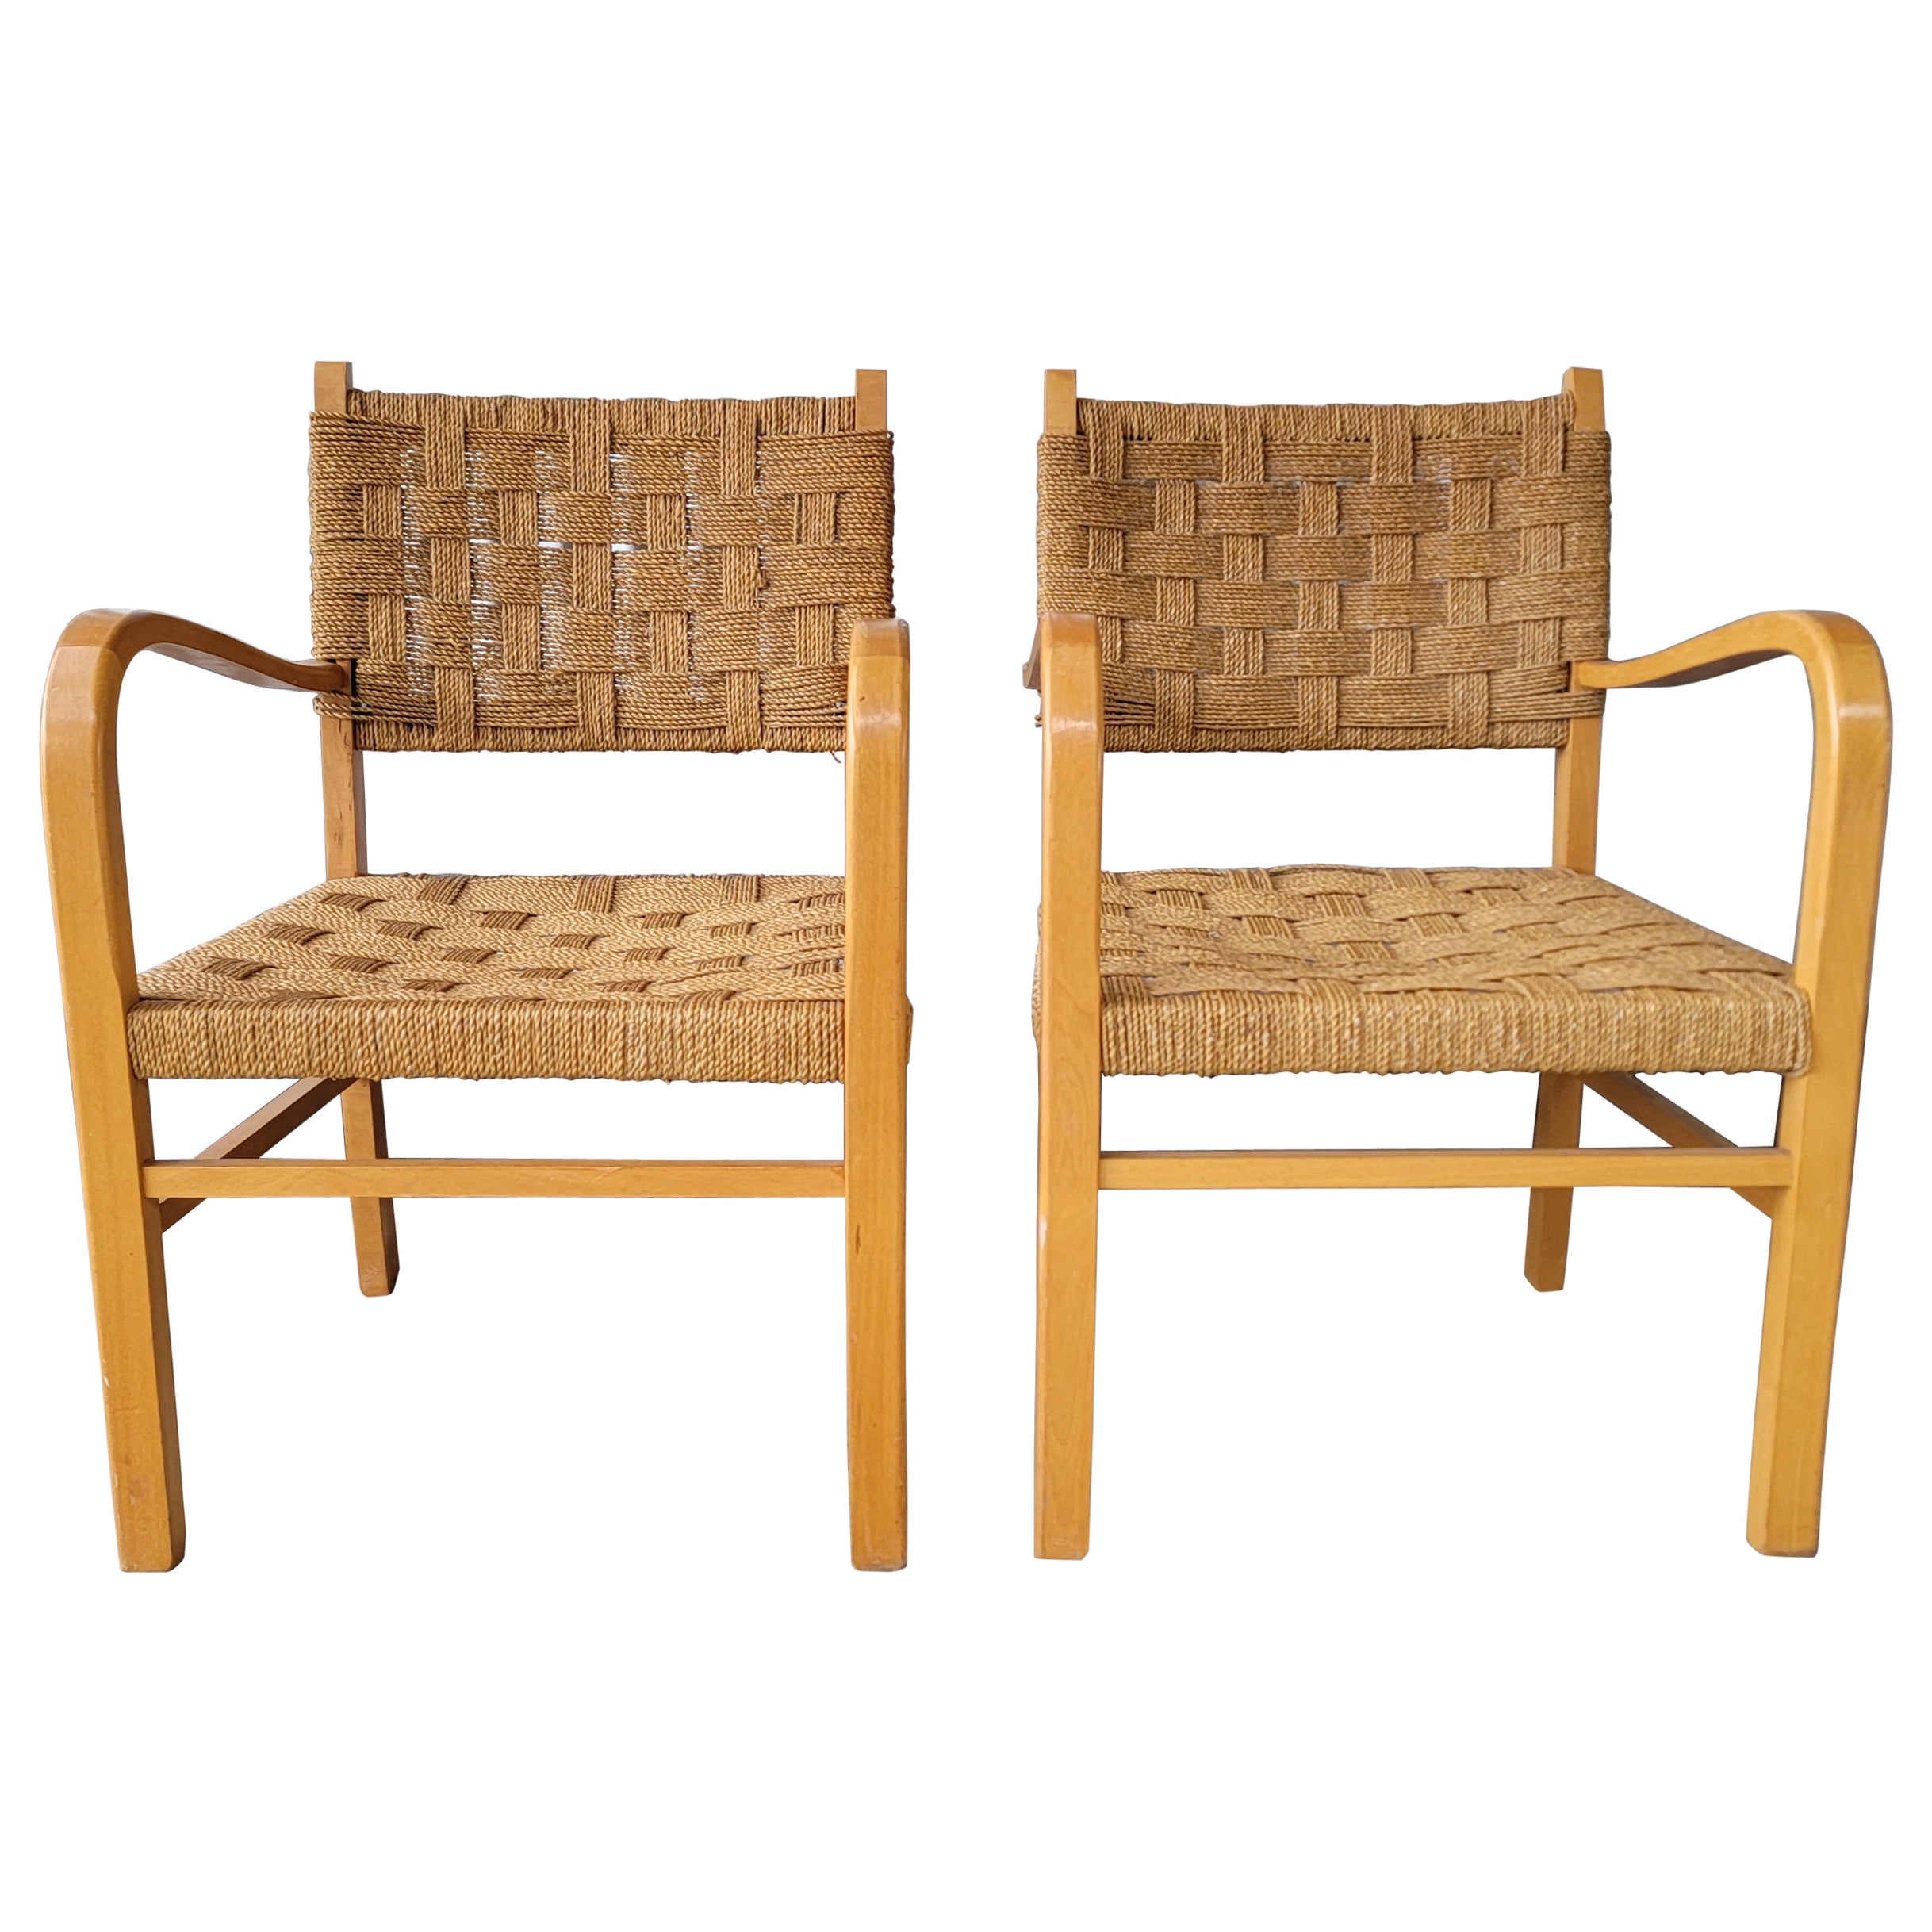 Erich Dieckmann Attrib. Bauhaus Lounge Chairs